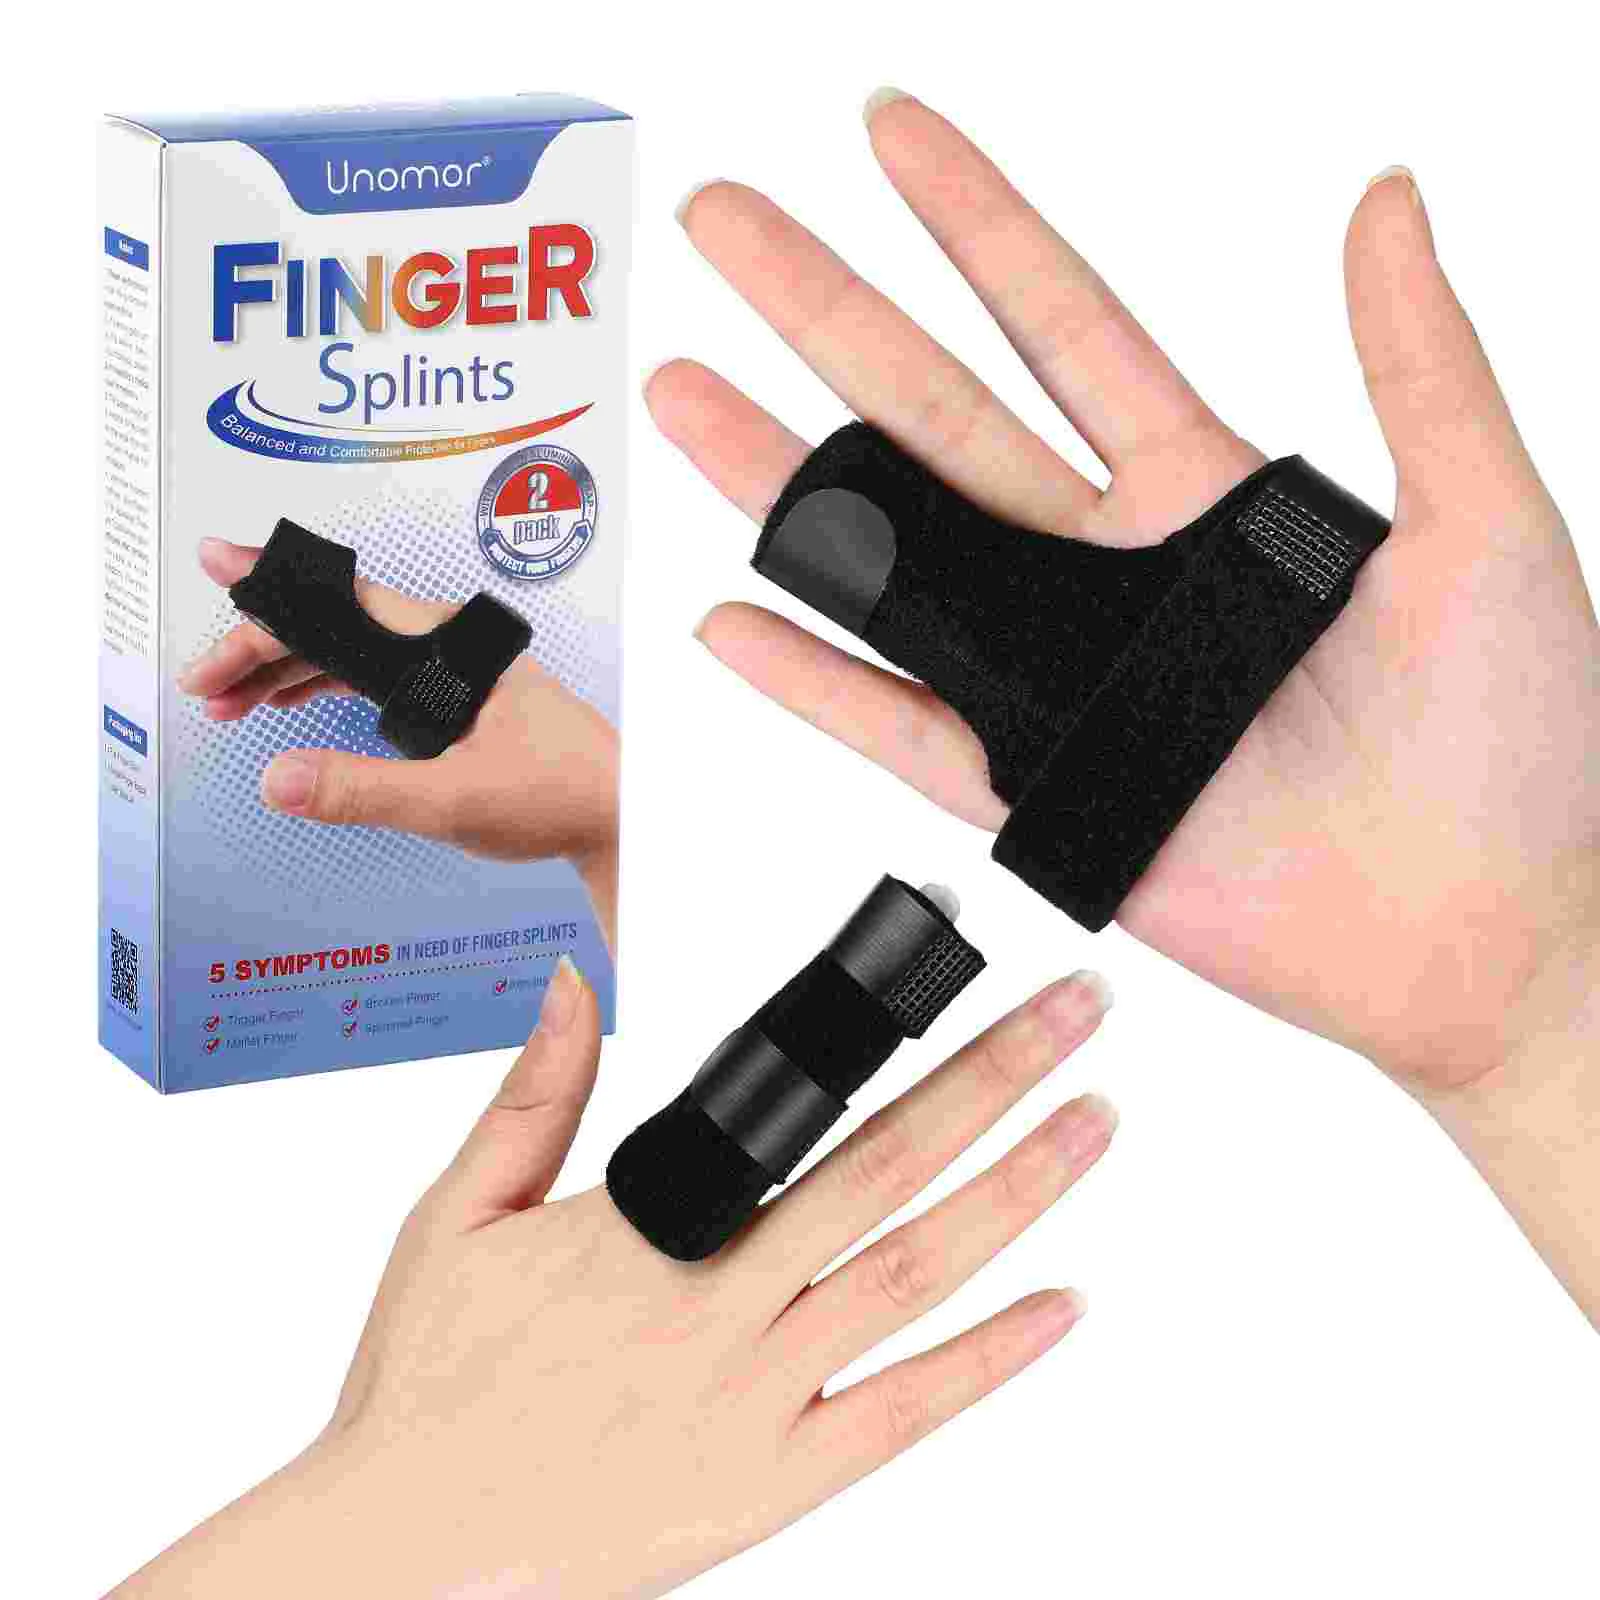 

Защита для пальцев, искусственная шина для пальцев, реабилитация пальцев, тренировка, выпрямление, искусственный триггер пальца